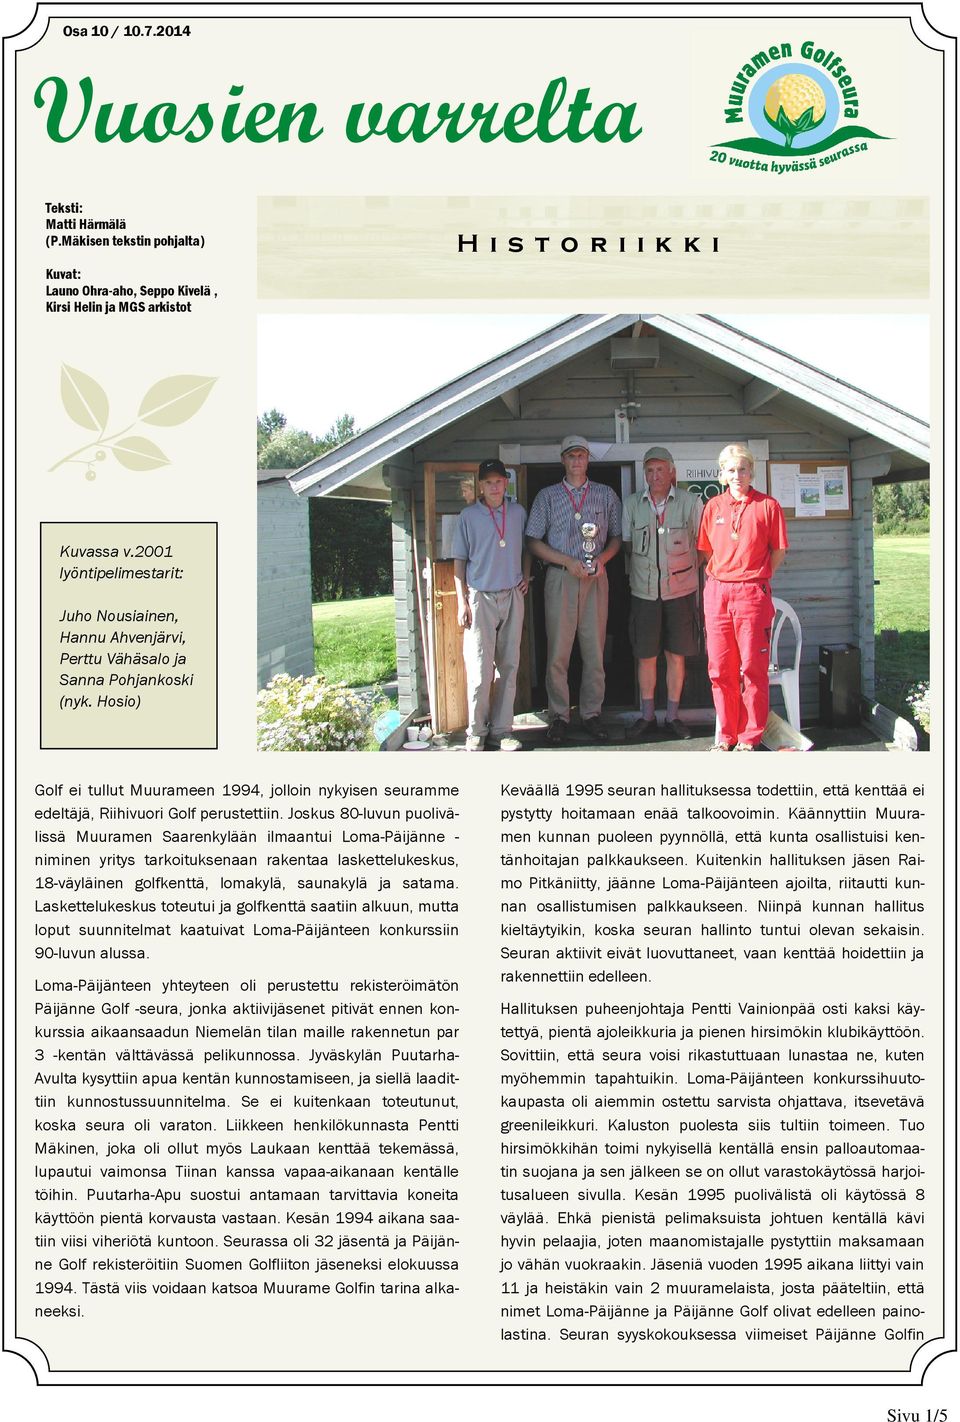 Hosio) Golf ei tullut Muurameen 1994, jolloin nykyisen seuramme edeltäjä, Riihivuori Golf perustettiin.